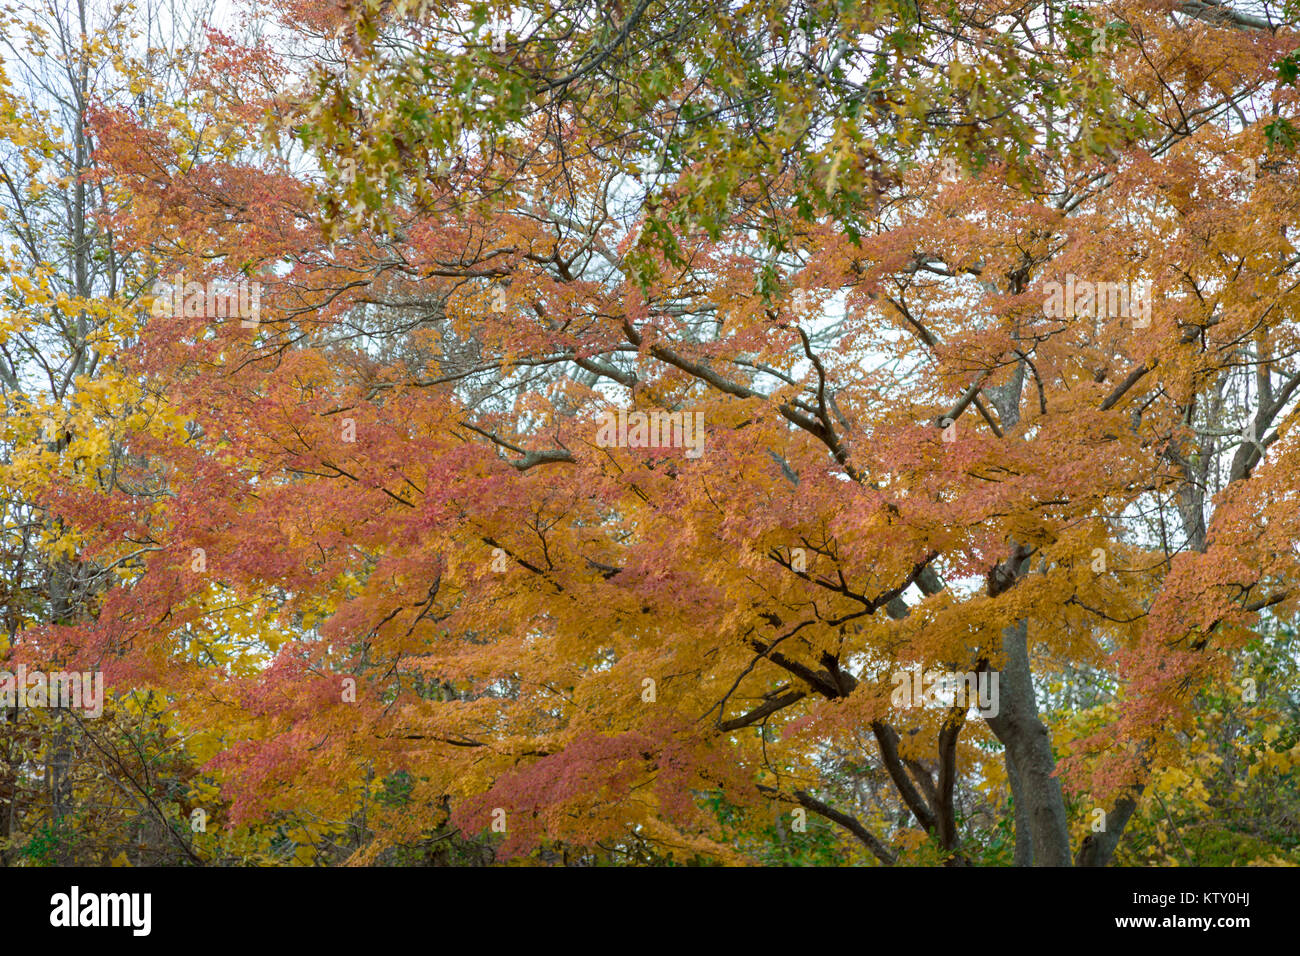 Landschaft mit einem schönen Baum im Herbst Farben Stockfoto